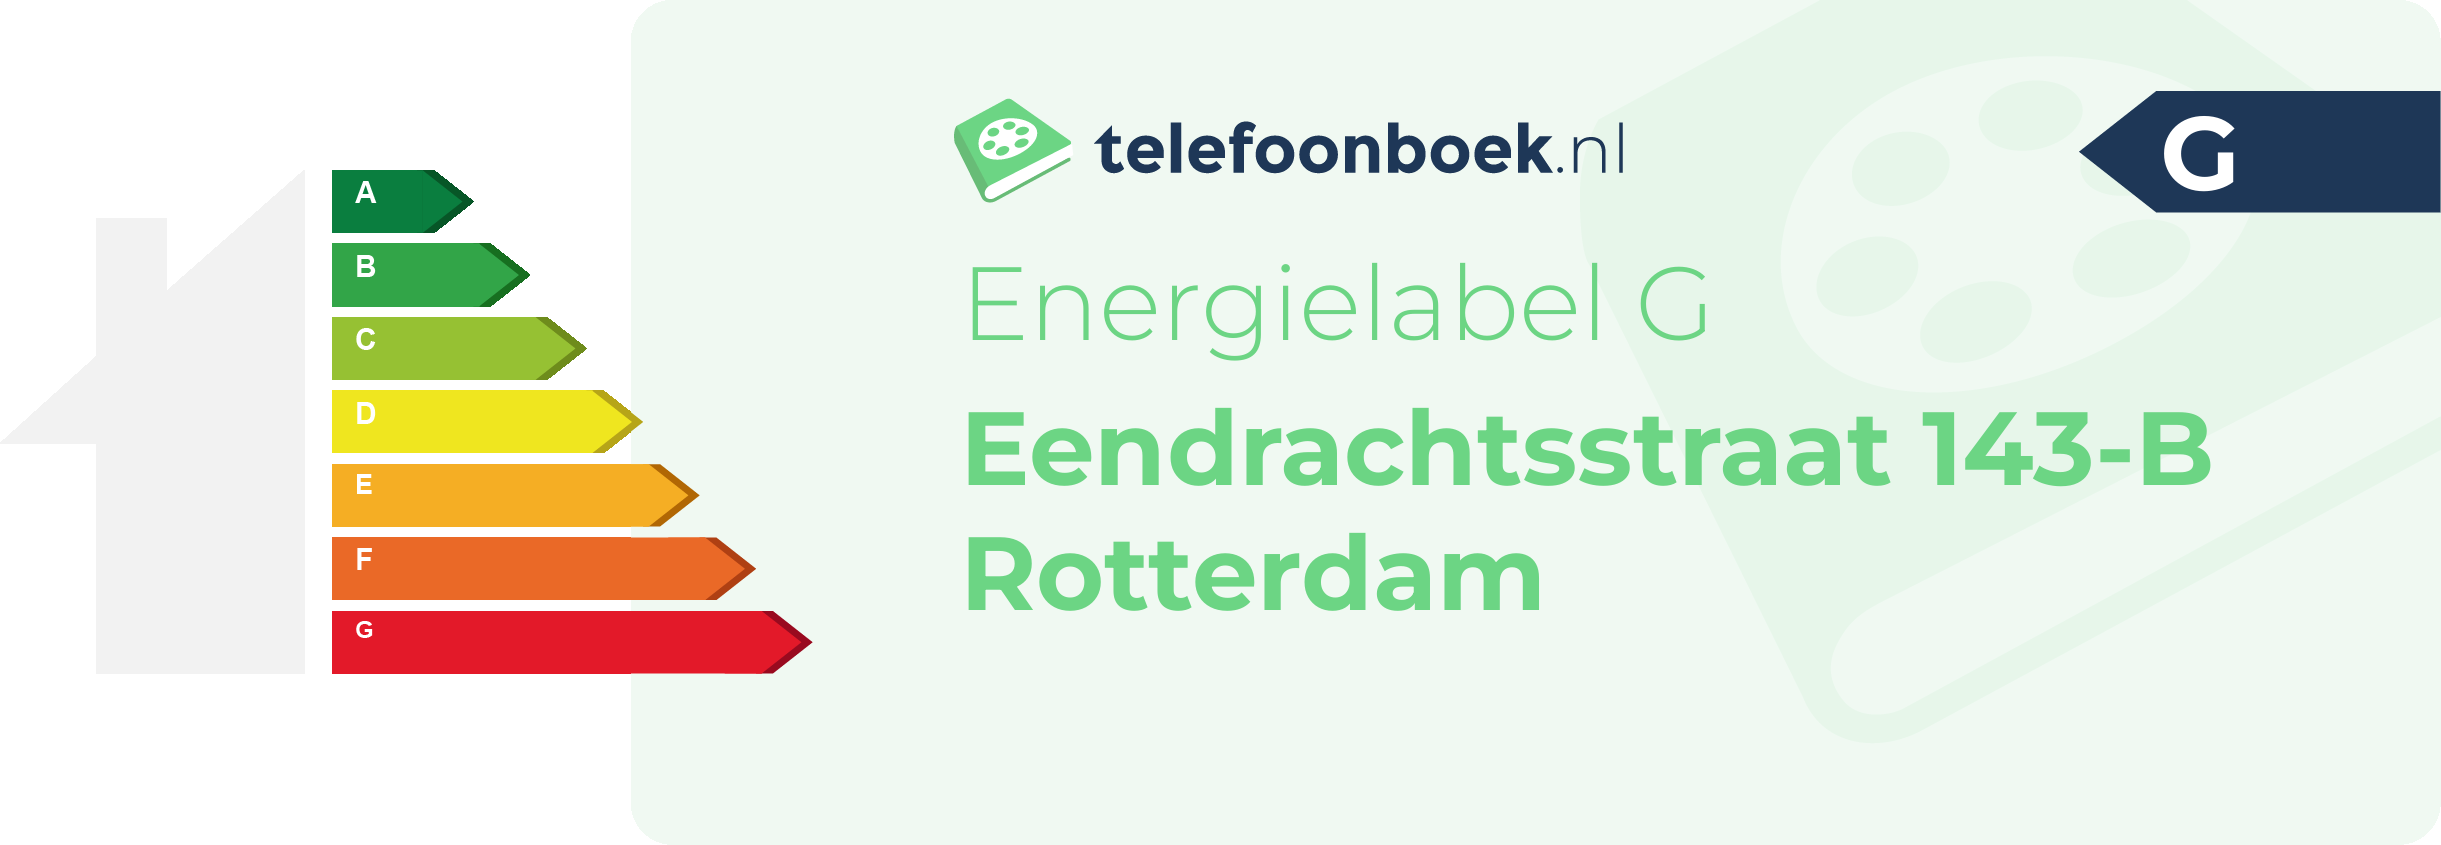 Energielabel Eendrachtsstraat 143-B Rotterdam